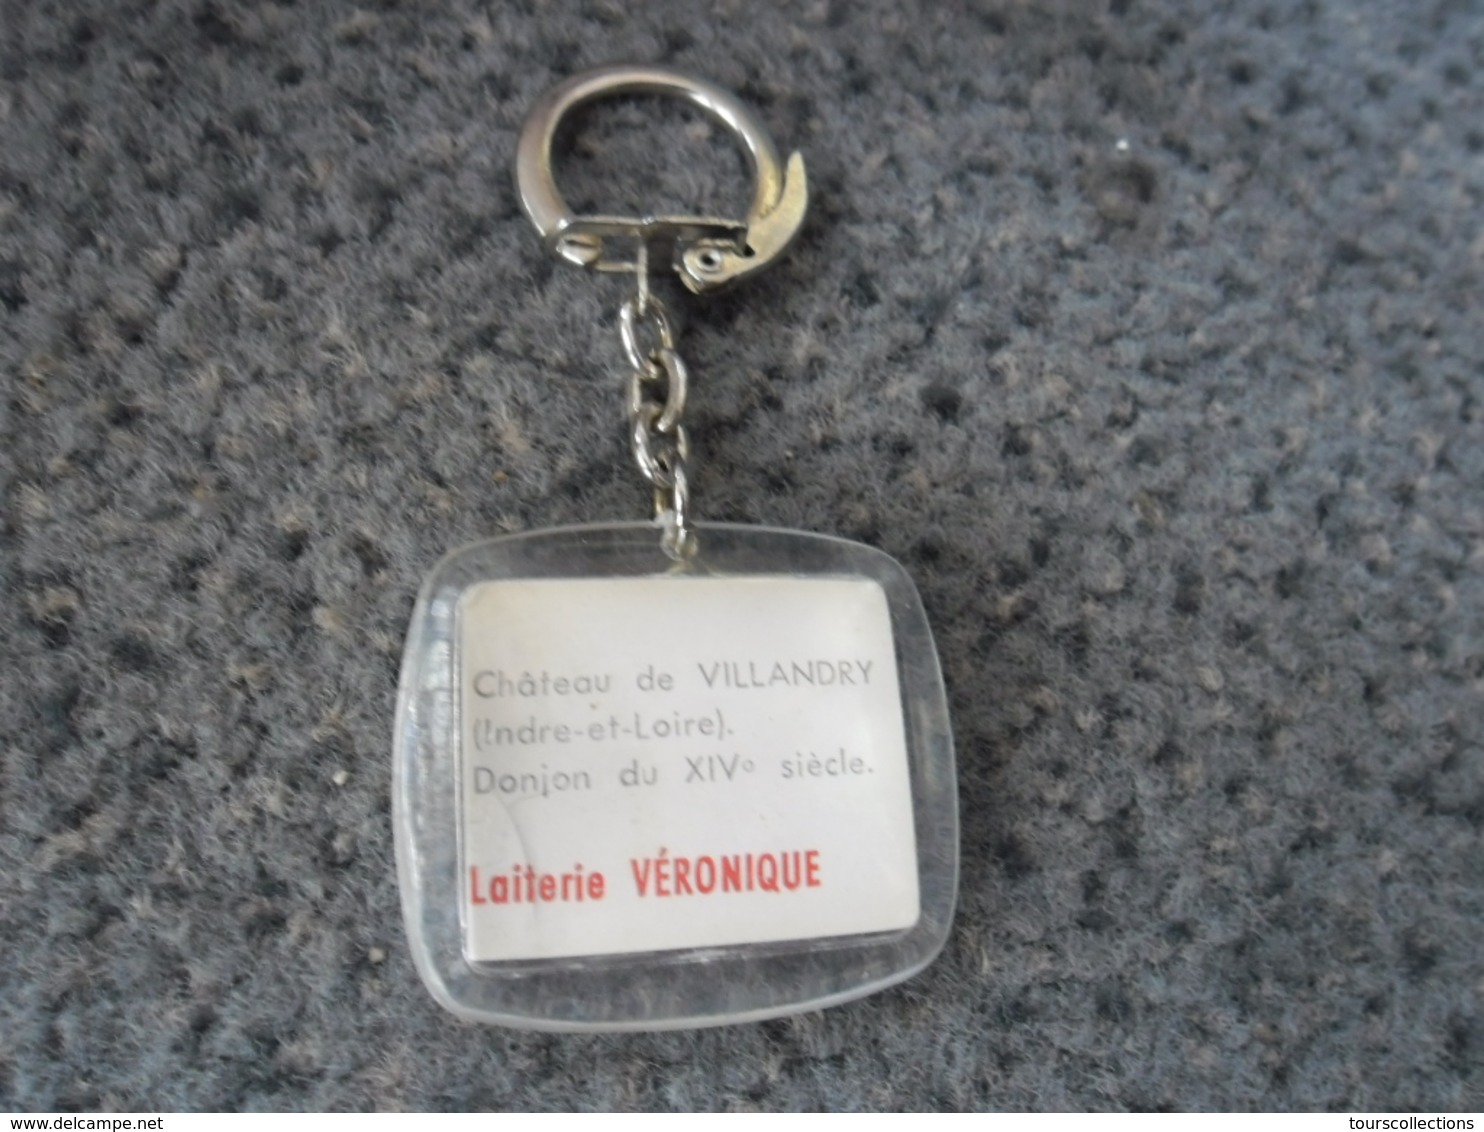 1 PORTE CLEFS REGION CENTRE - Ville Et Château De Villandry (37) - Pub Laiterie Véronique @ Vers 1965 - Llaveros